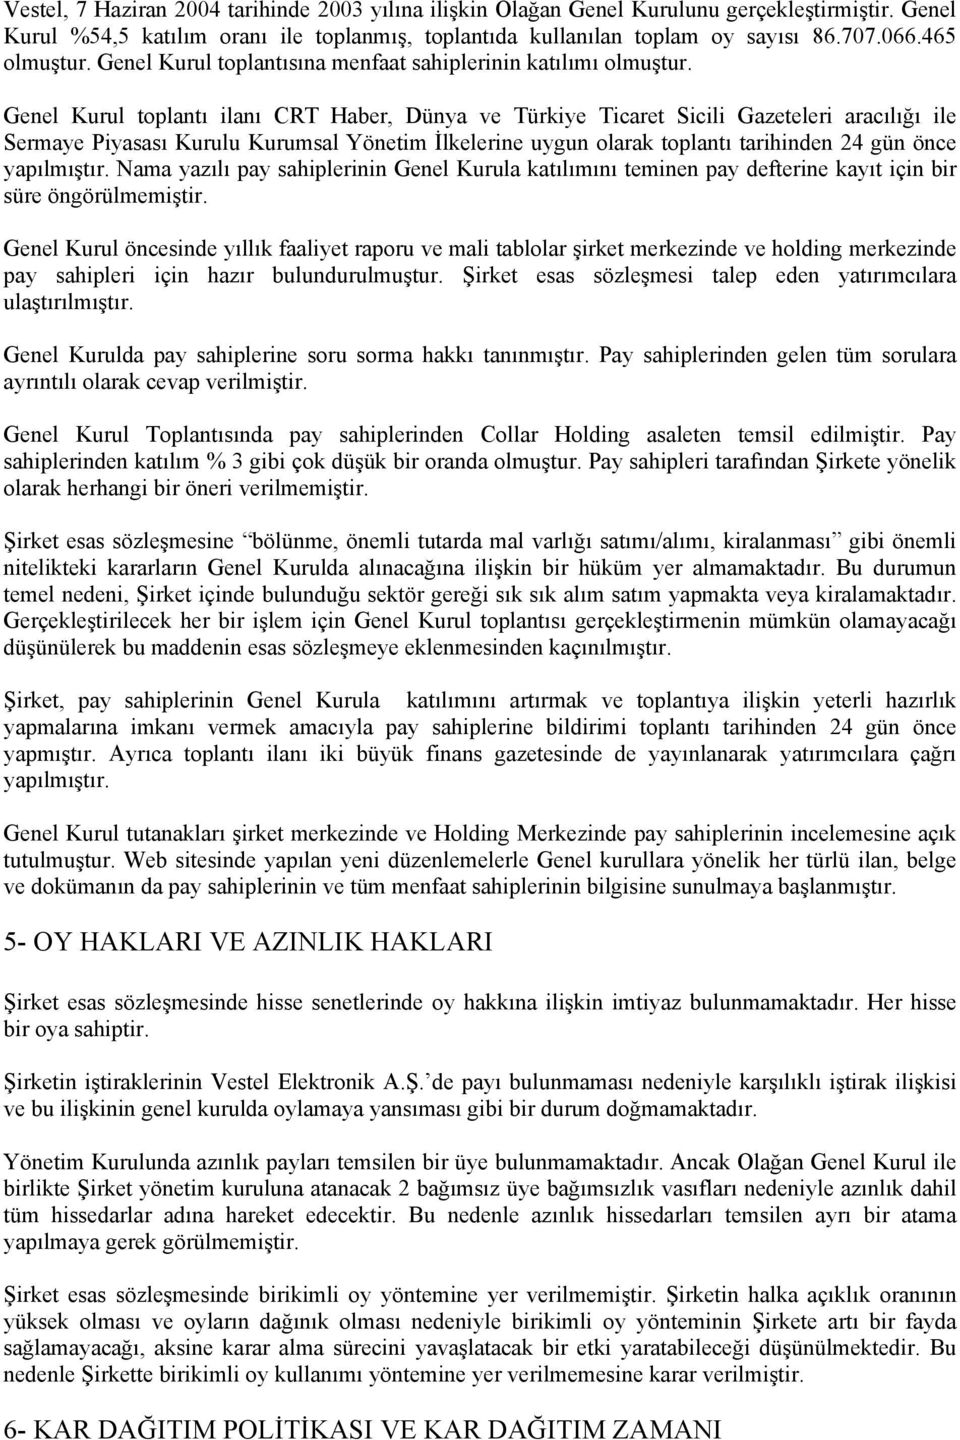 Genel Kurul tplantı ilanı CRT Haber, Dünya ve Türkiye Ticaret Sicili Gazeteleri aracılığı ile Sermaye Piyasası Kurulu Kurumsal Yönetim İlkelerine uygun larak tplantı tarihinden 24 gün önce